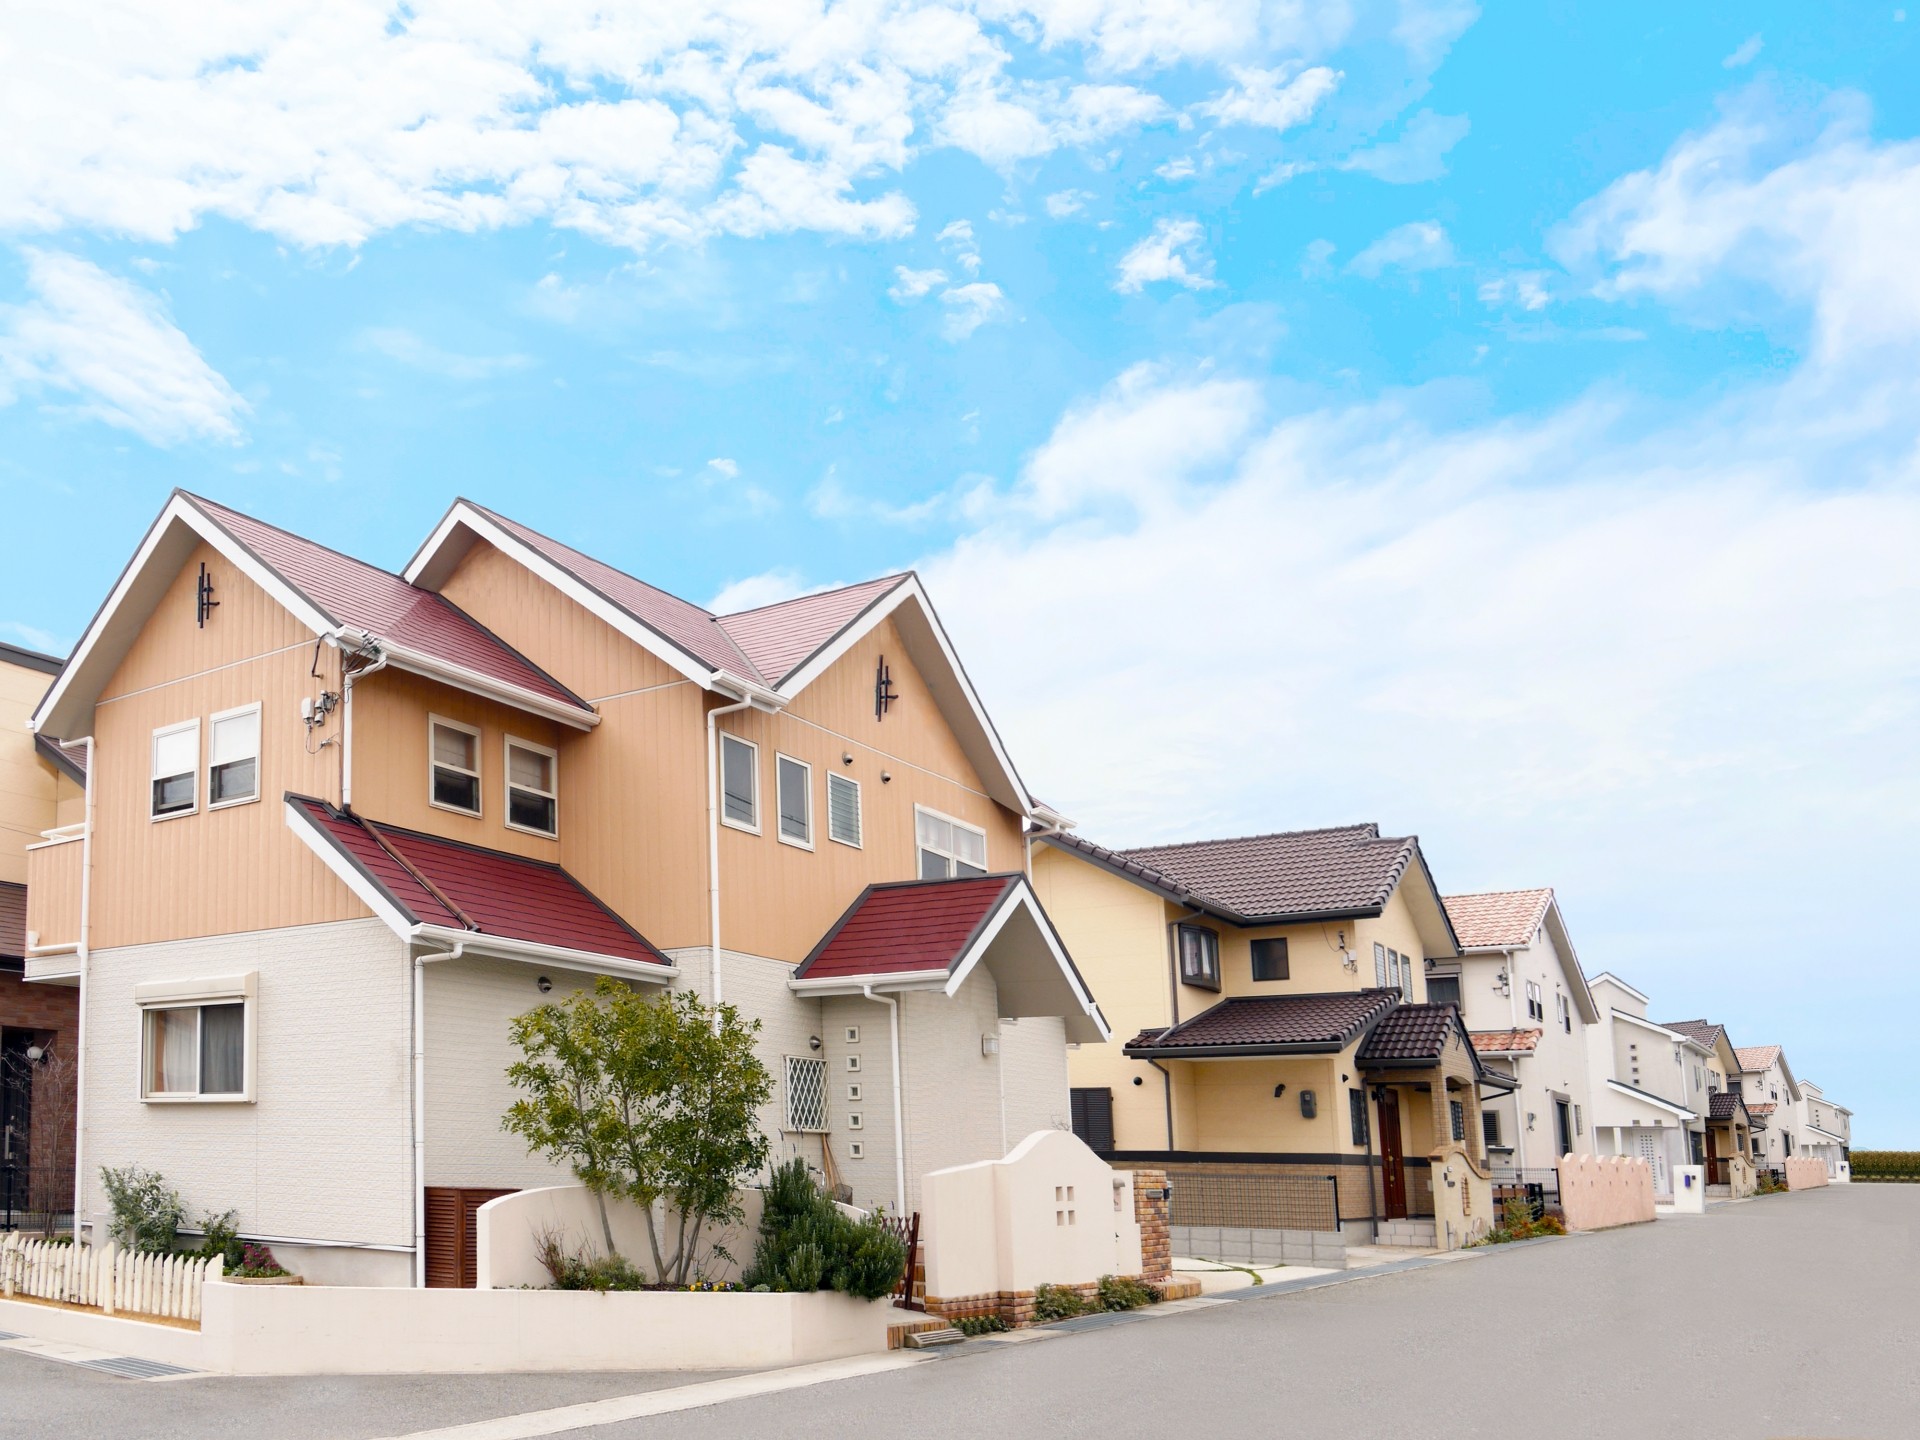 愛知県の建売・分譲住宅で考慮すべき環境問題とエコ対策